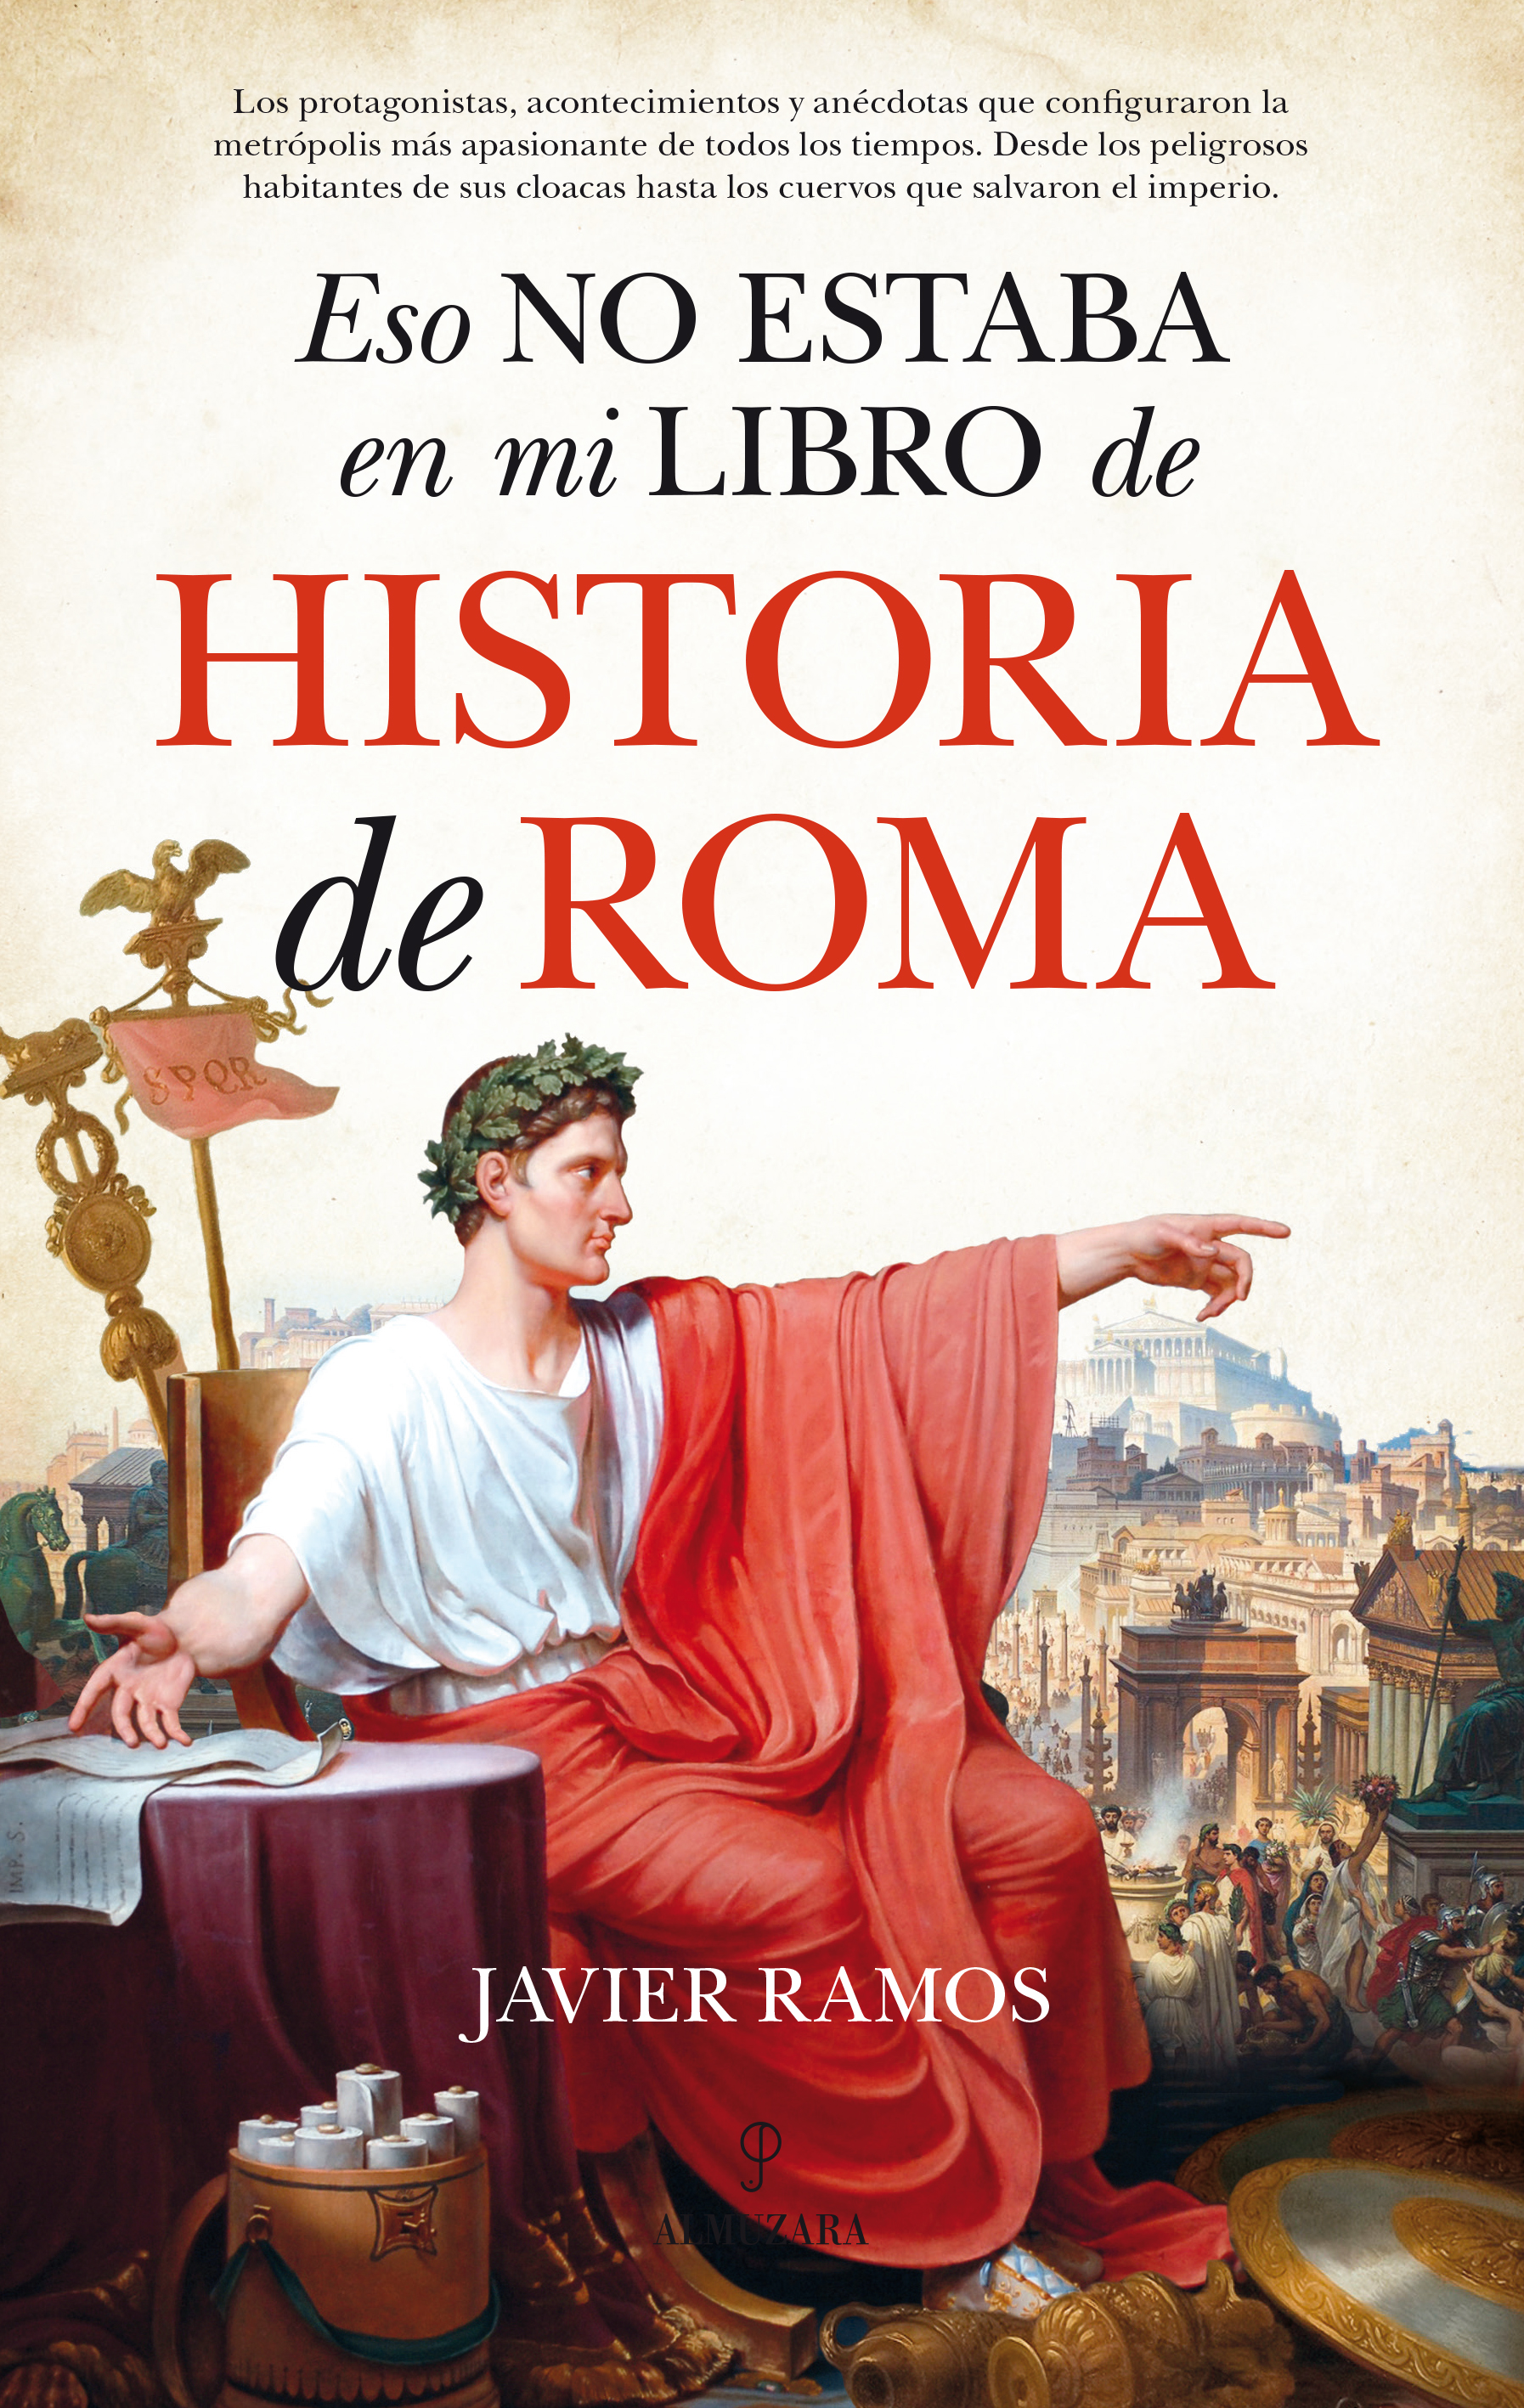 Eso no estaba en mi libro de Historia de Roma - La tienda de libros